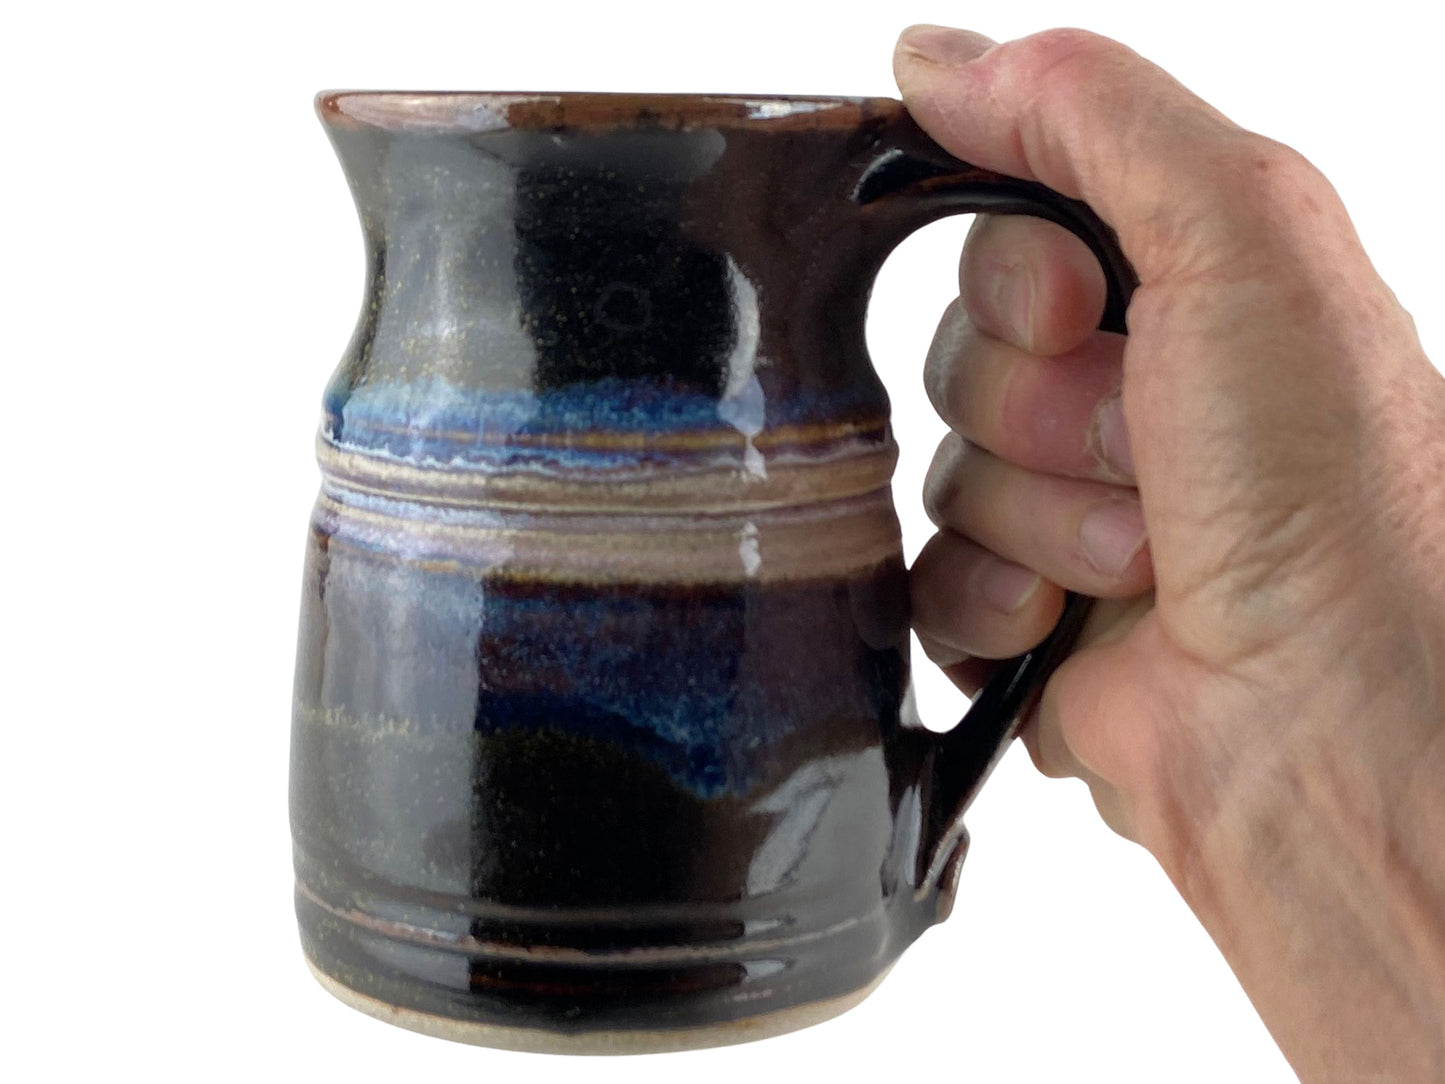 16 oz. Stoneware Coffee Mug